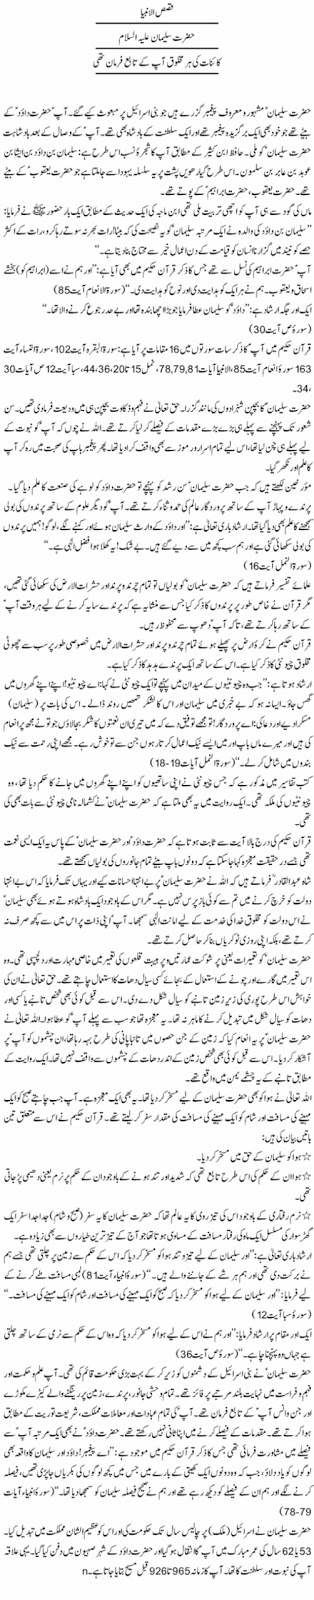 History-Of-Hazrat-Suleman-In-Urdu.jpg